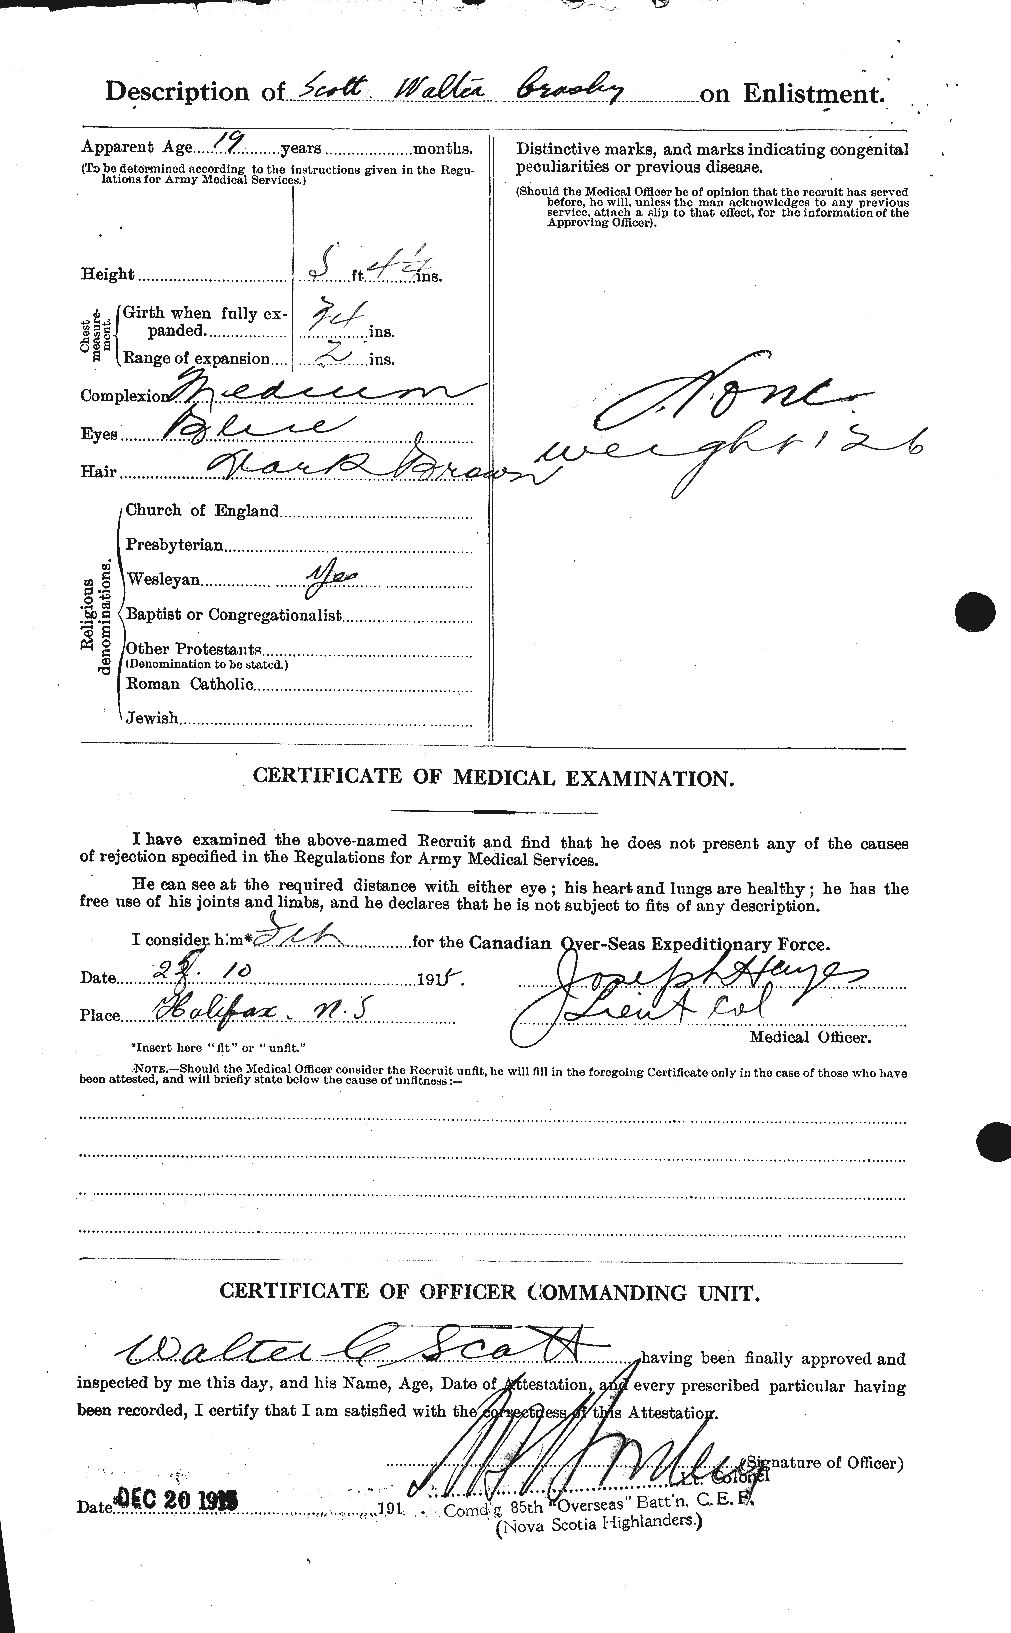 Dossiers du Personnel de la Première Guerre mondiale - CEC 087998b